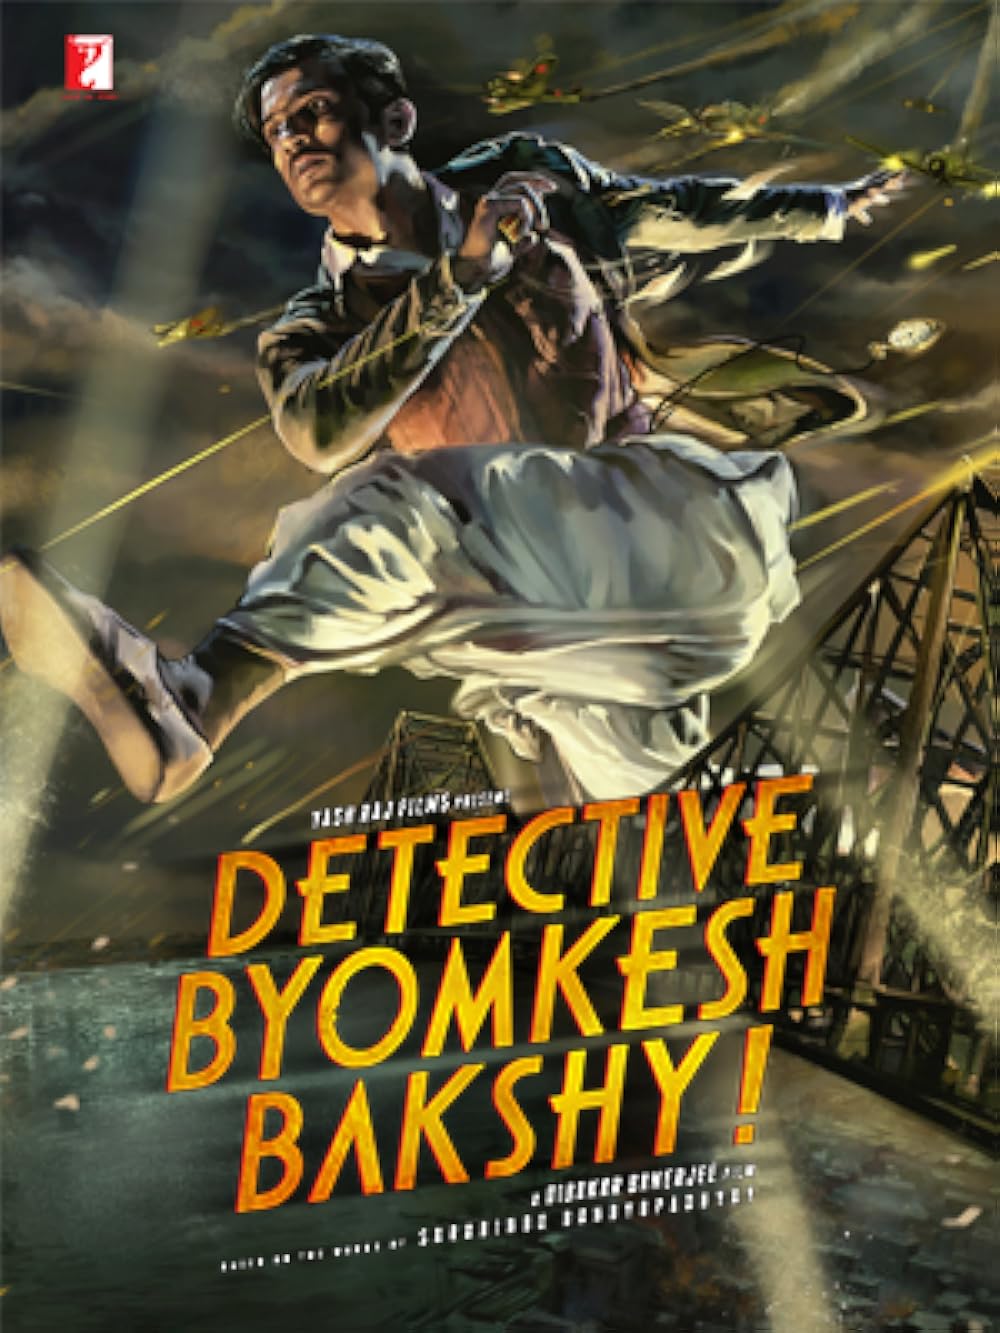 Download Detective Byomkesh Bakshy! (2015) Hindi Movie Bluray || 720p [1GB] || 1080p [2.1GB]